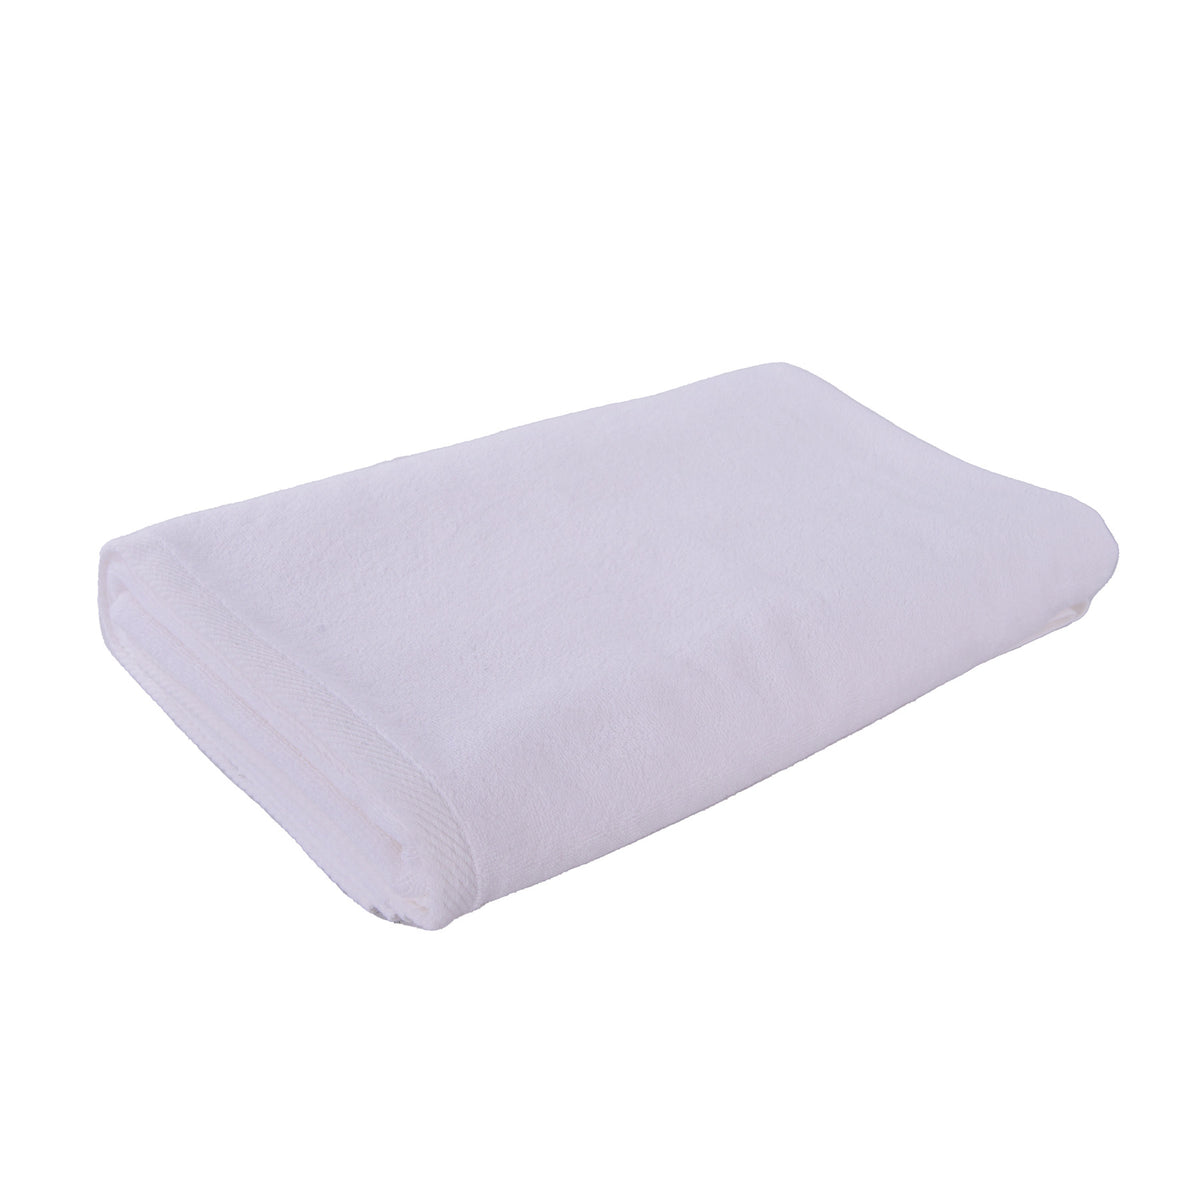 Bath Towel - WhiteSize: 81x163cm.